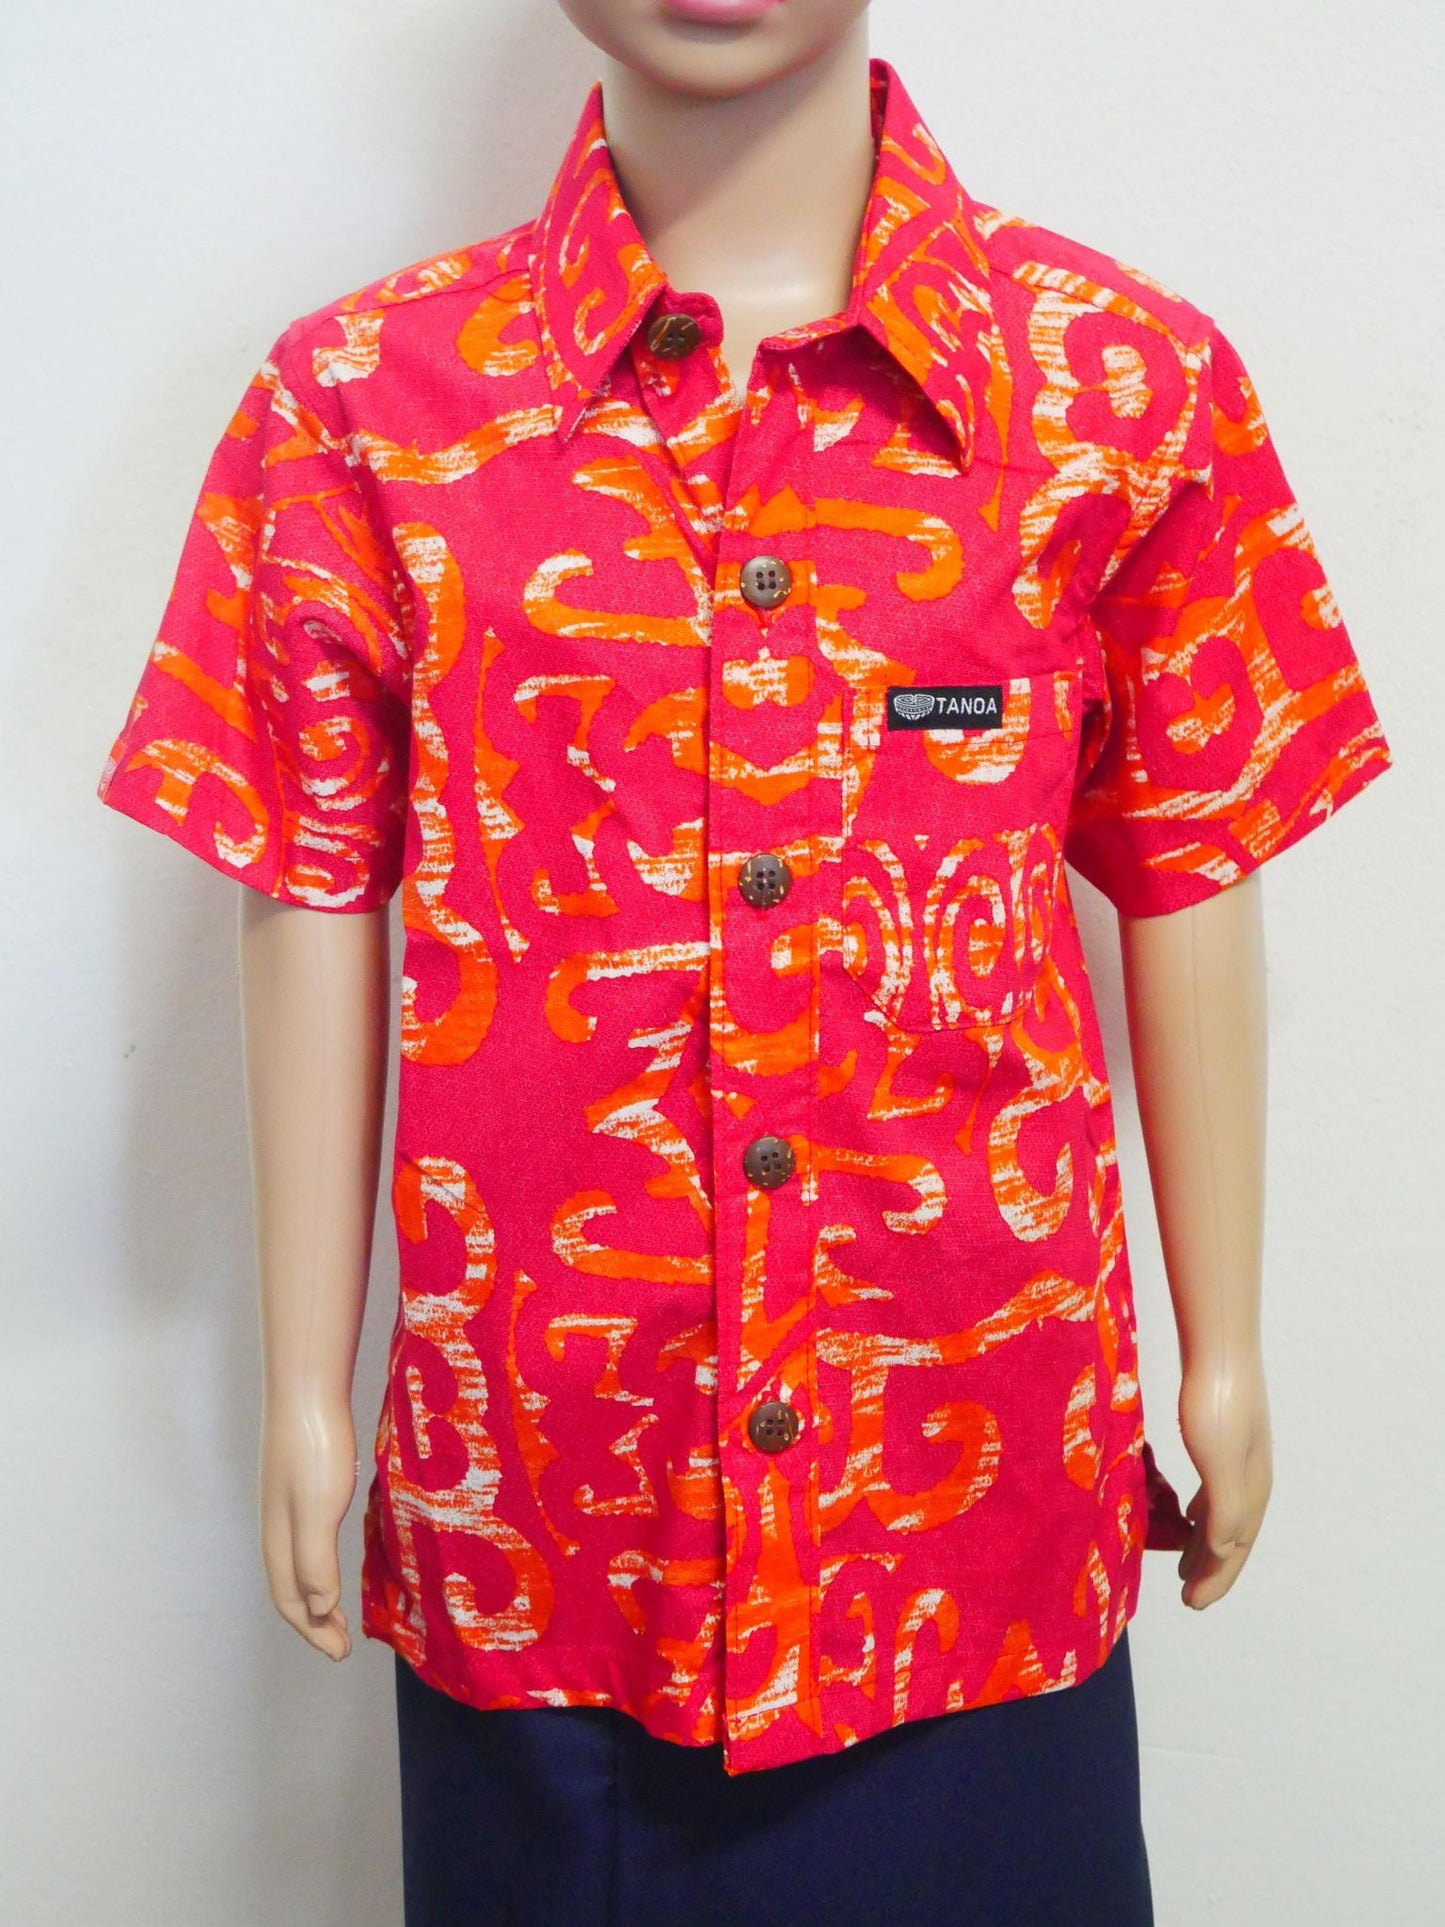 Tanoa Samoa Boy's Shirt (Red) FB806